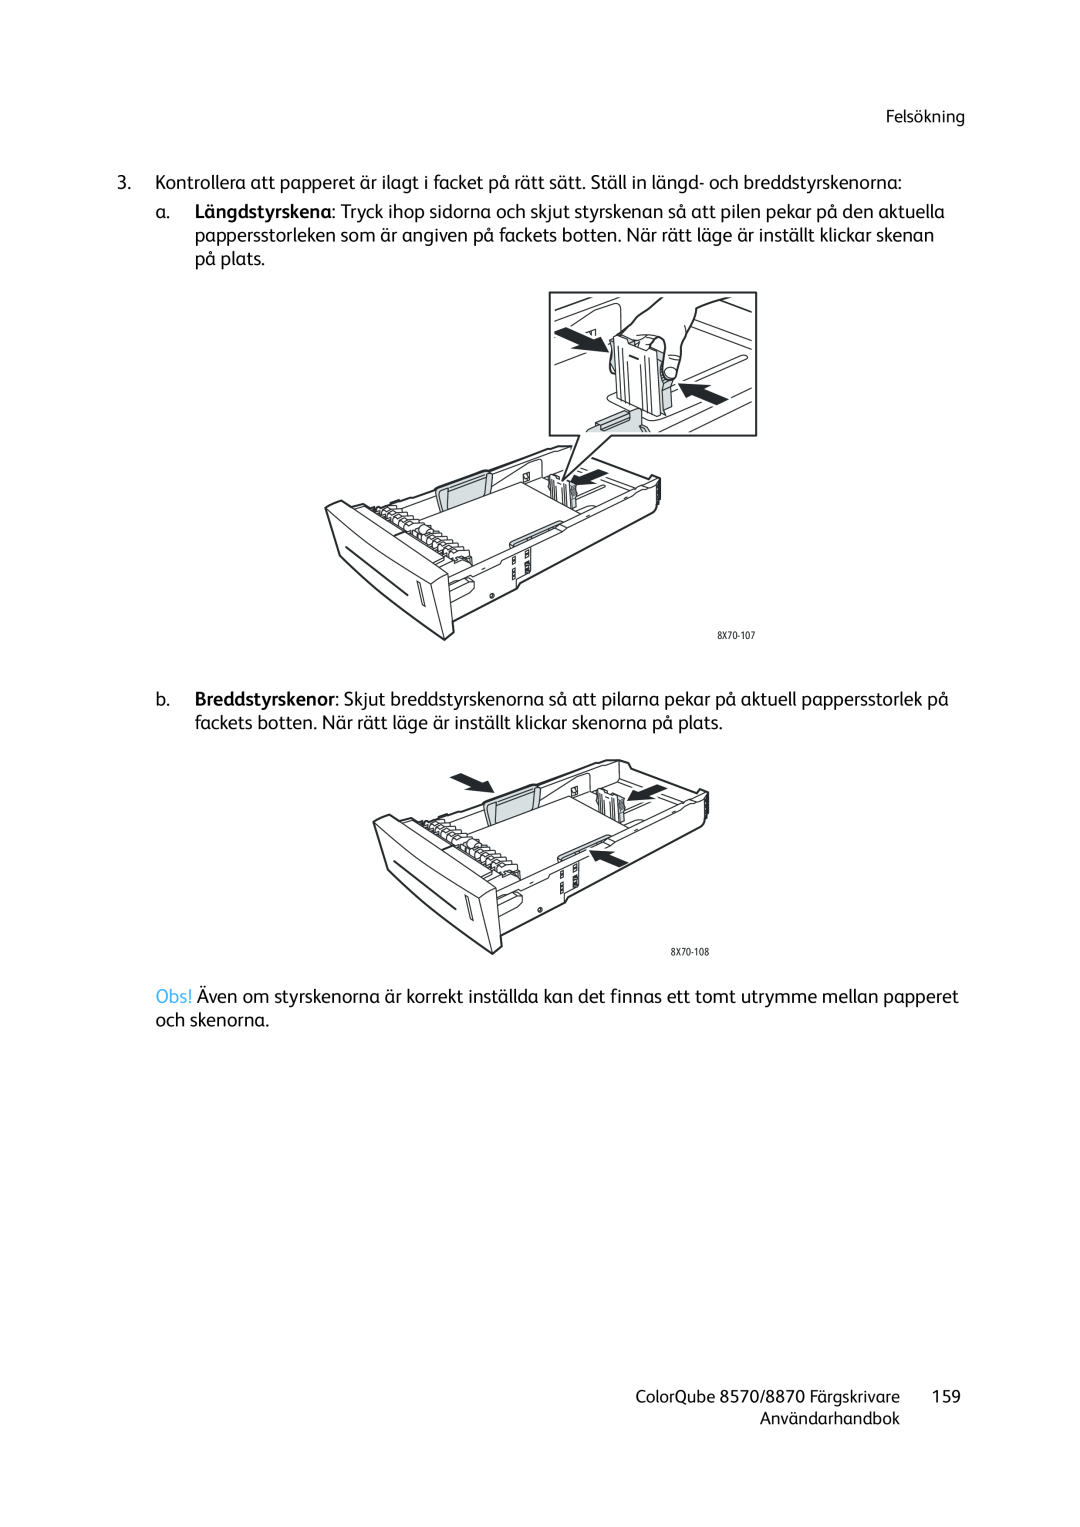 Xerox 8570 / 8870 manual Felsökning, Användarhandbok, ColorQube 8570/8870 Färgskrivare 